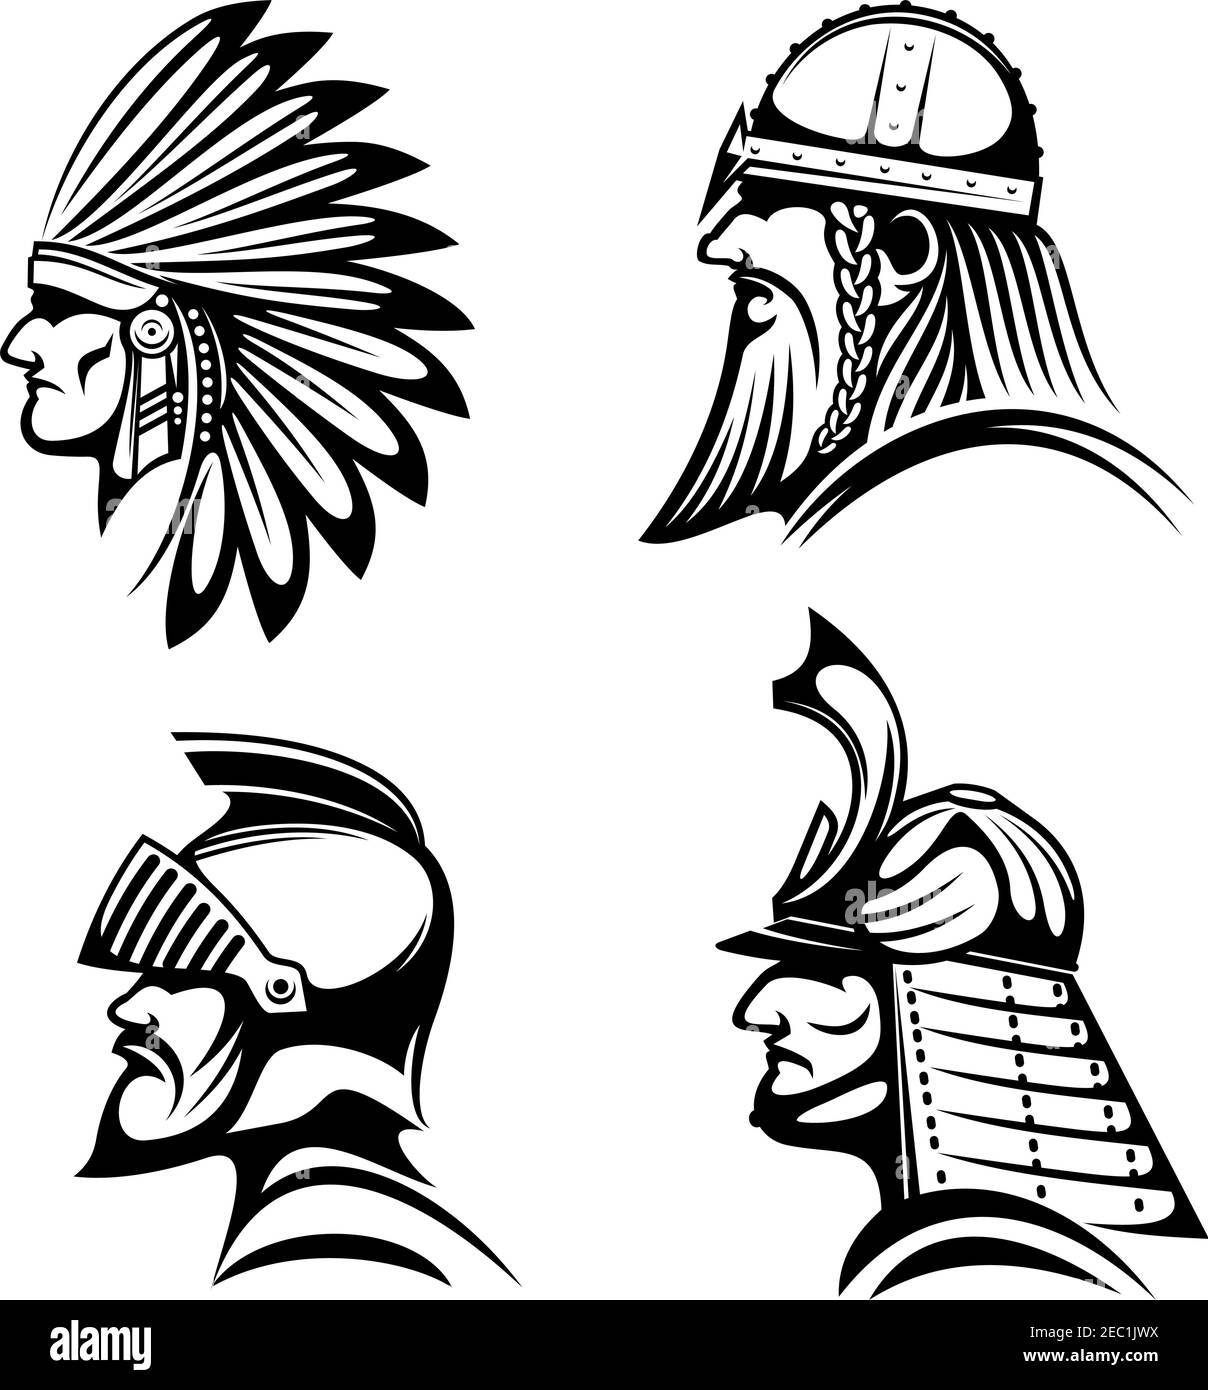 Antiguos guerreros en cascos iconos con perfiles de caballero medieval,  soldado vikingo con barba, samurai japonés y nativo americano indio en la  pluma de la hea Imagen Vector de stock - Alamy